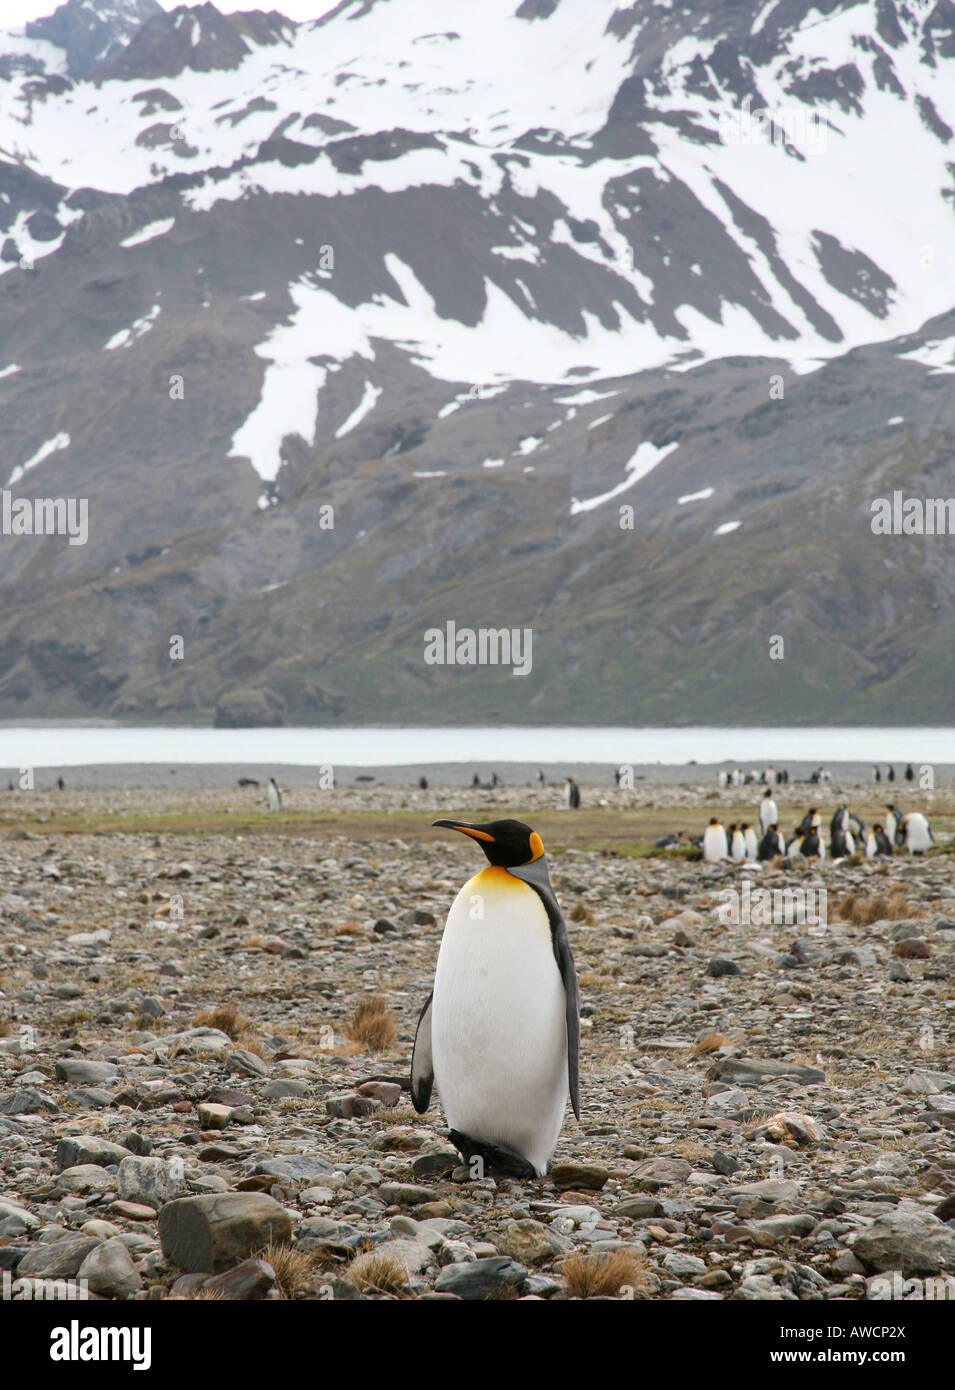 Le roi solitaire penguin sur plage avec des pics enneigés en arrière-plan Banque D'Images